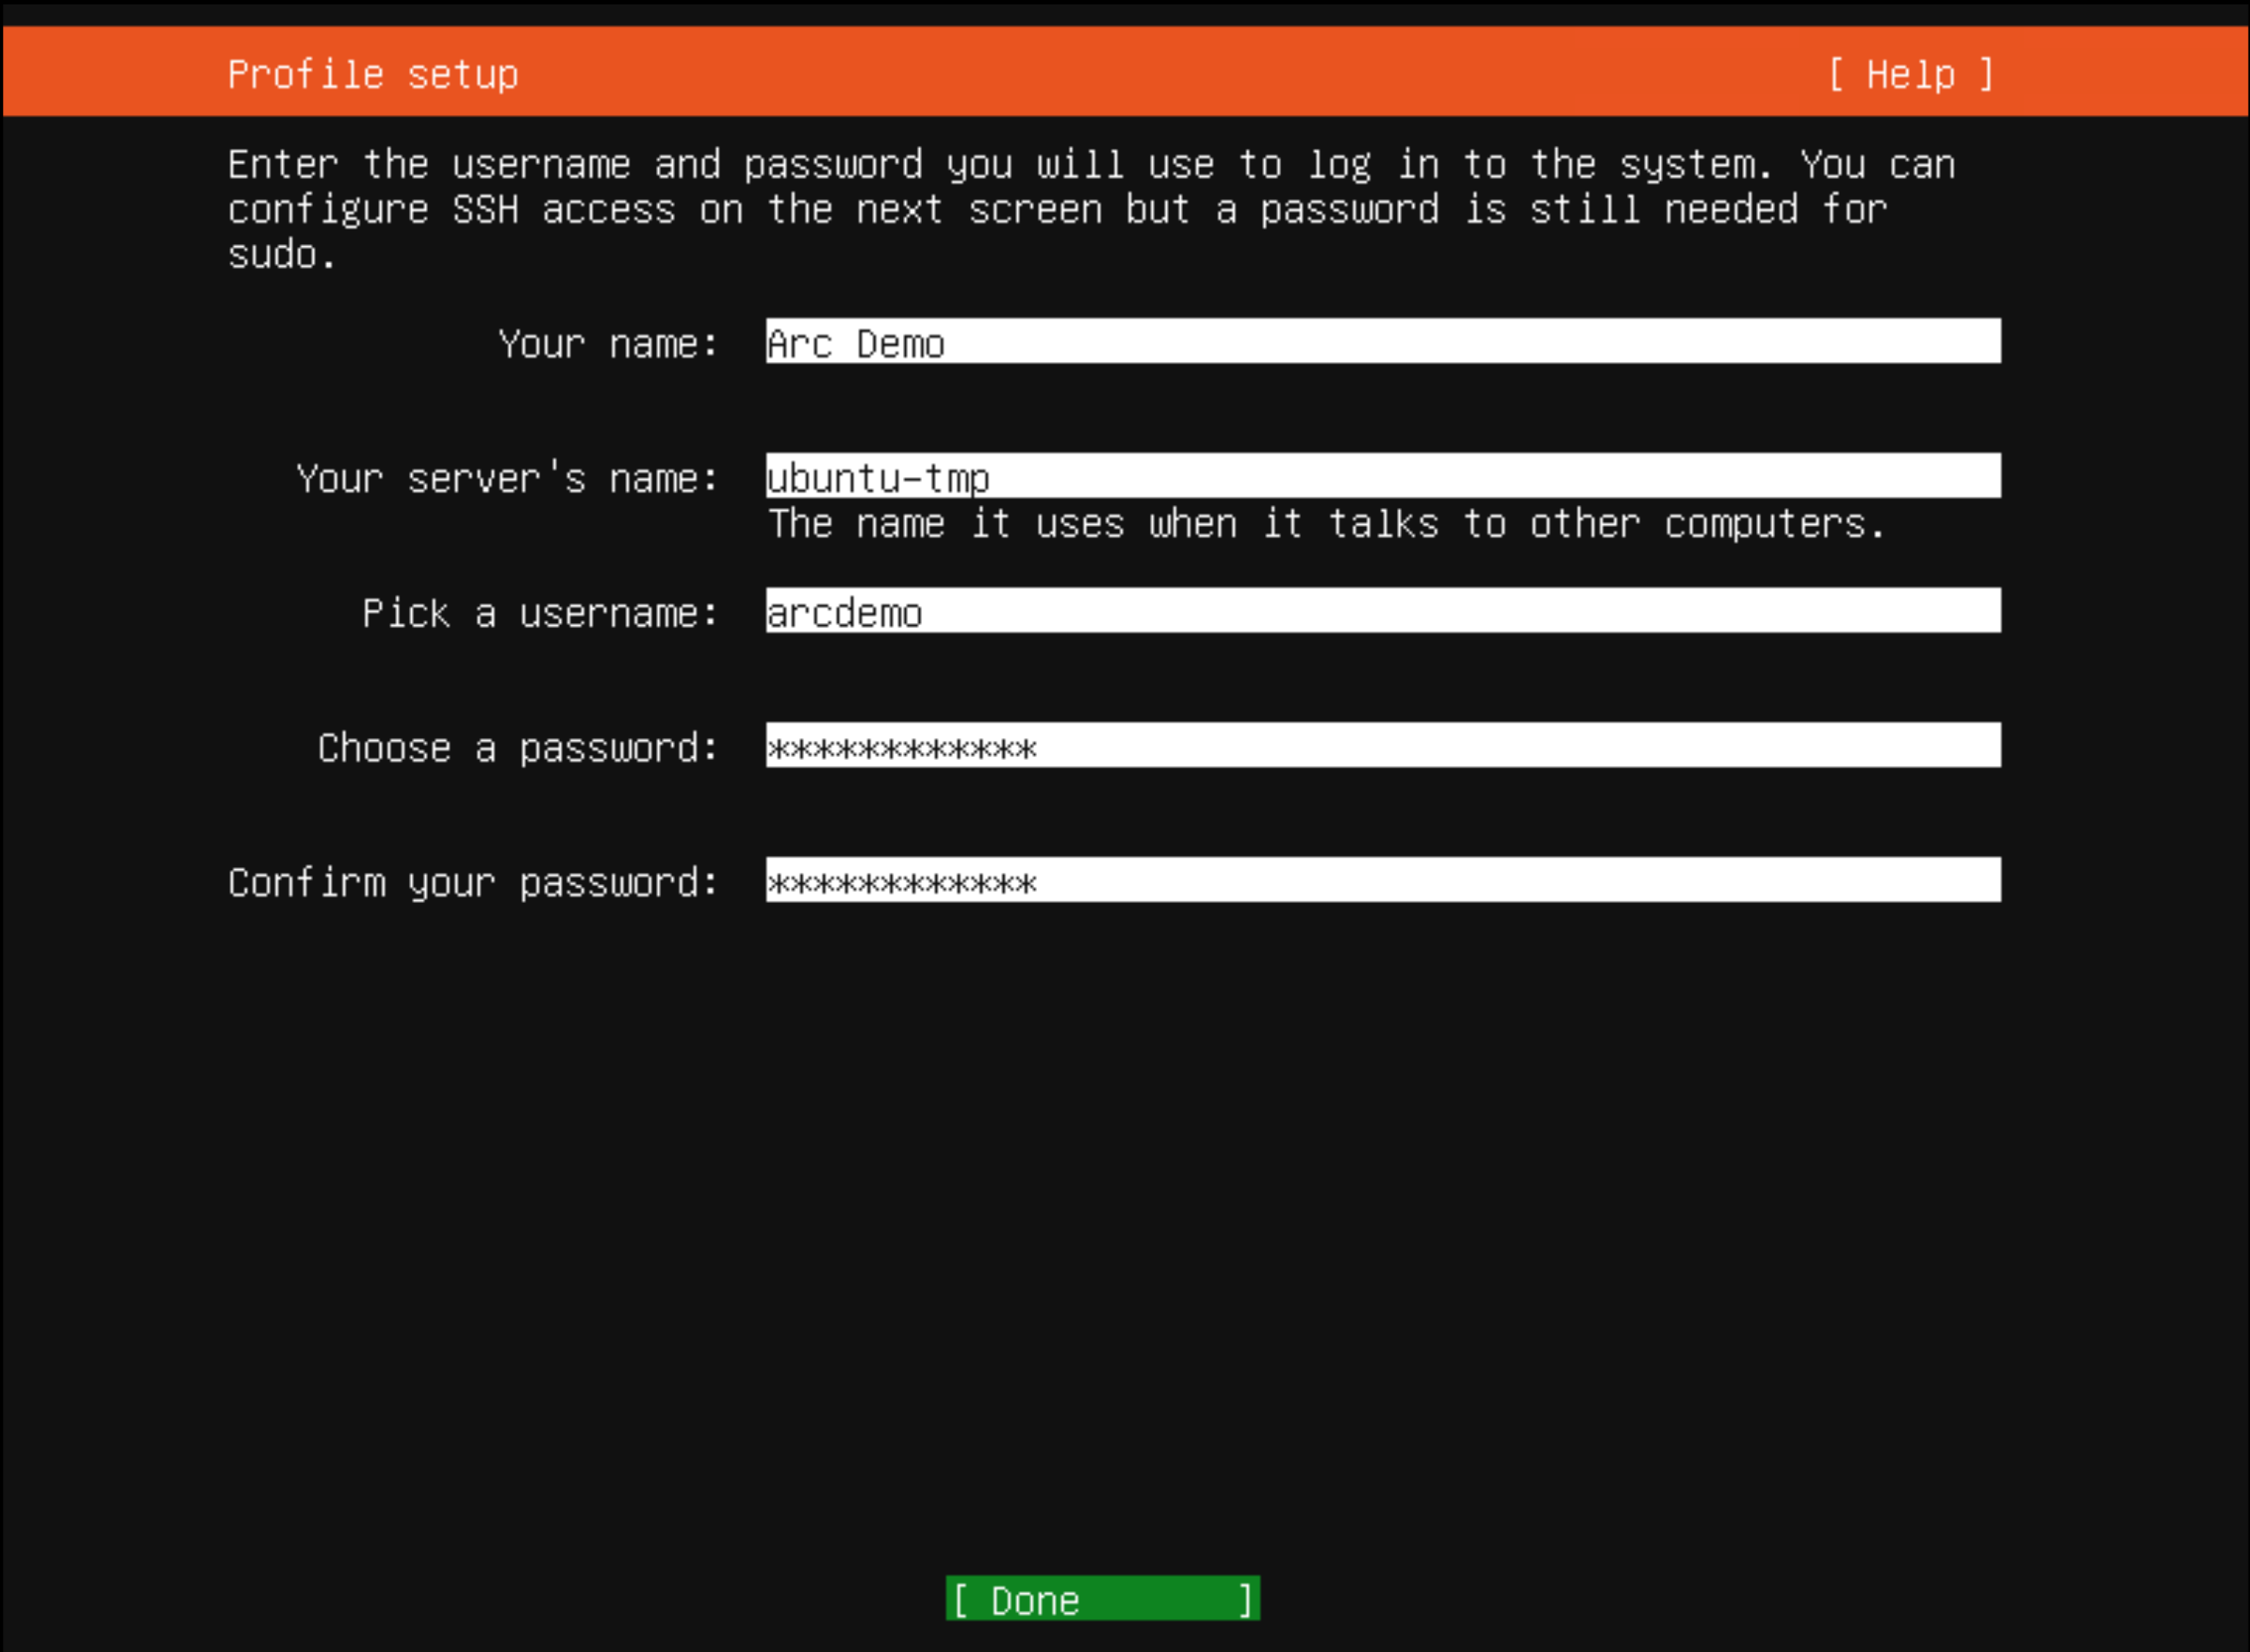 Decimoquinta captura de pantalla de una instalación de Ubuntu.